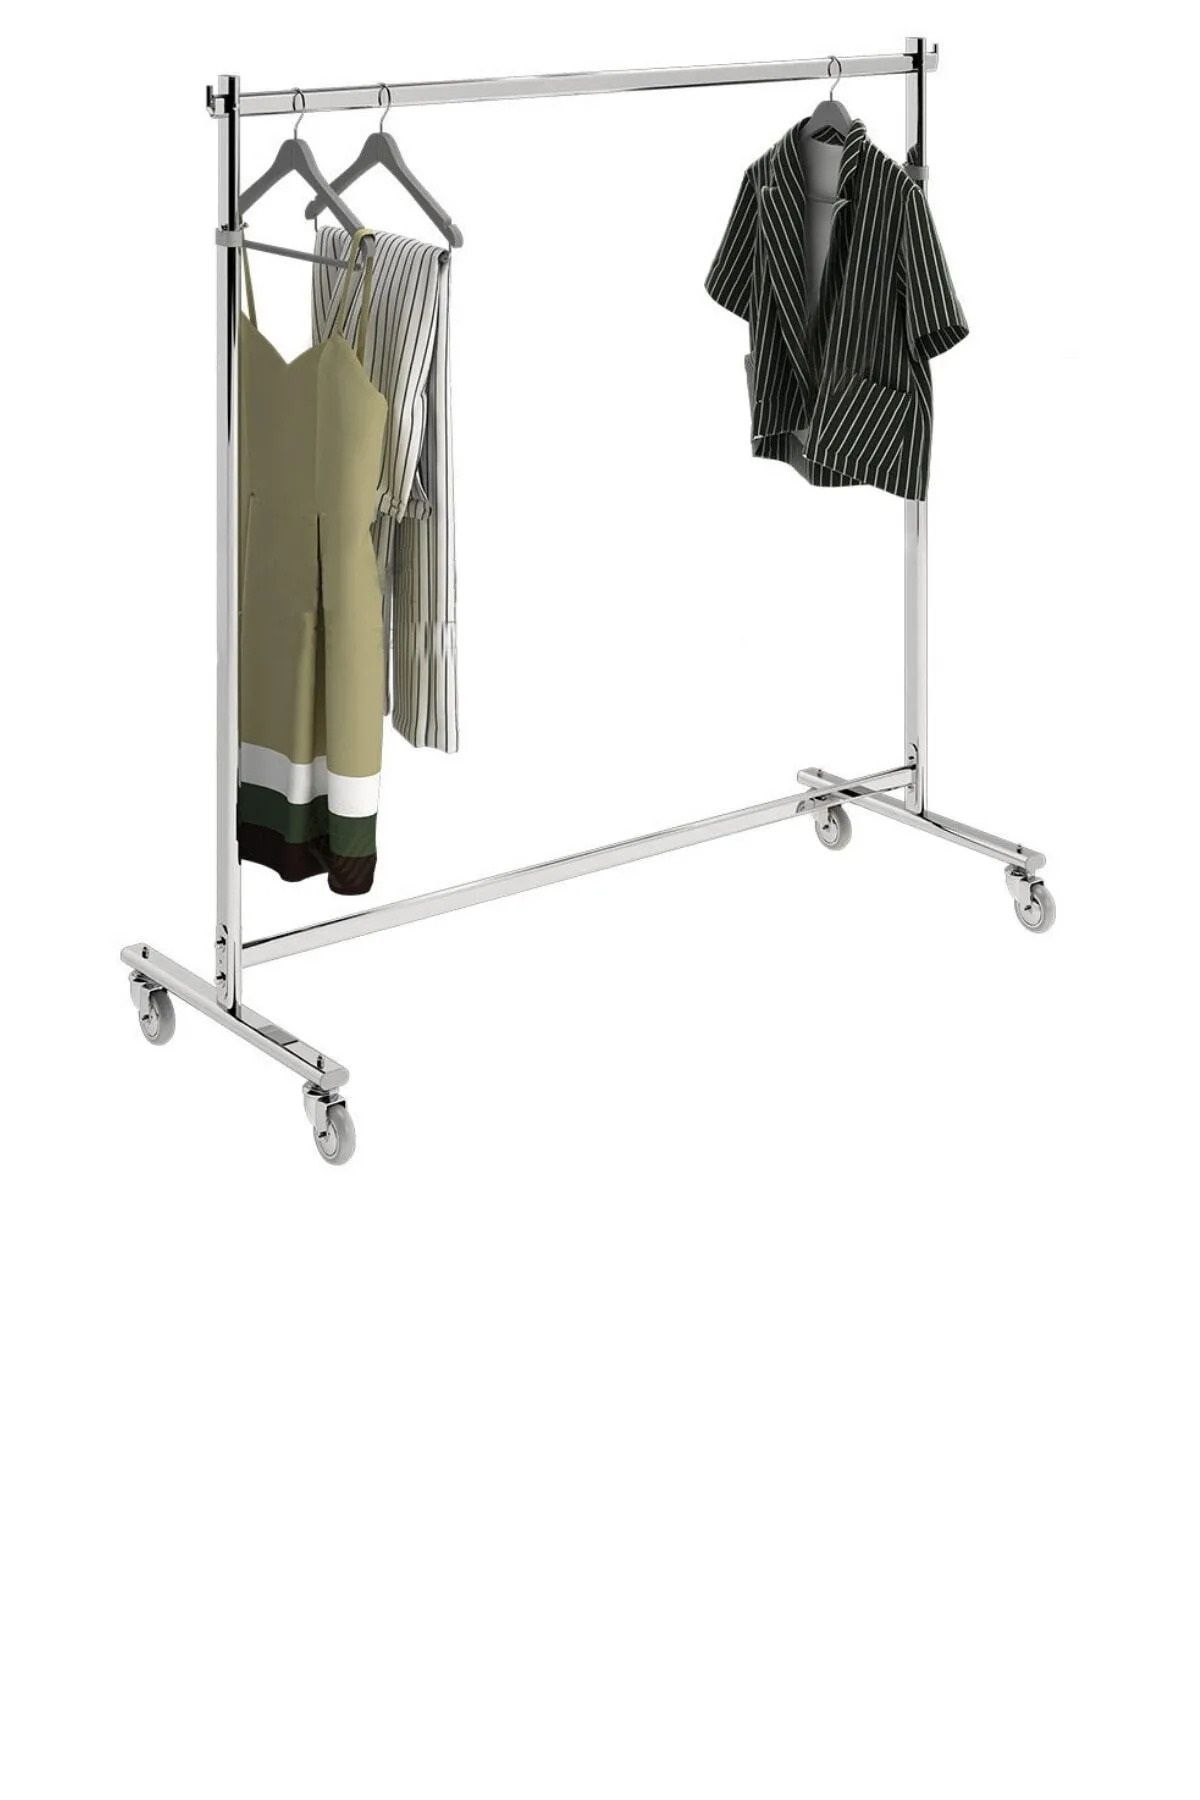 KALE Elbise Askılık Standı, Metal Orta Stand Konfeksiyon Standı Askılık